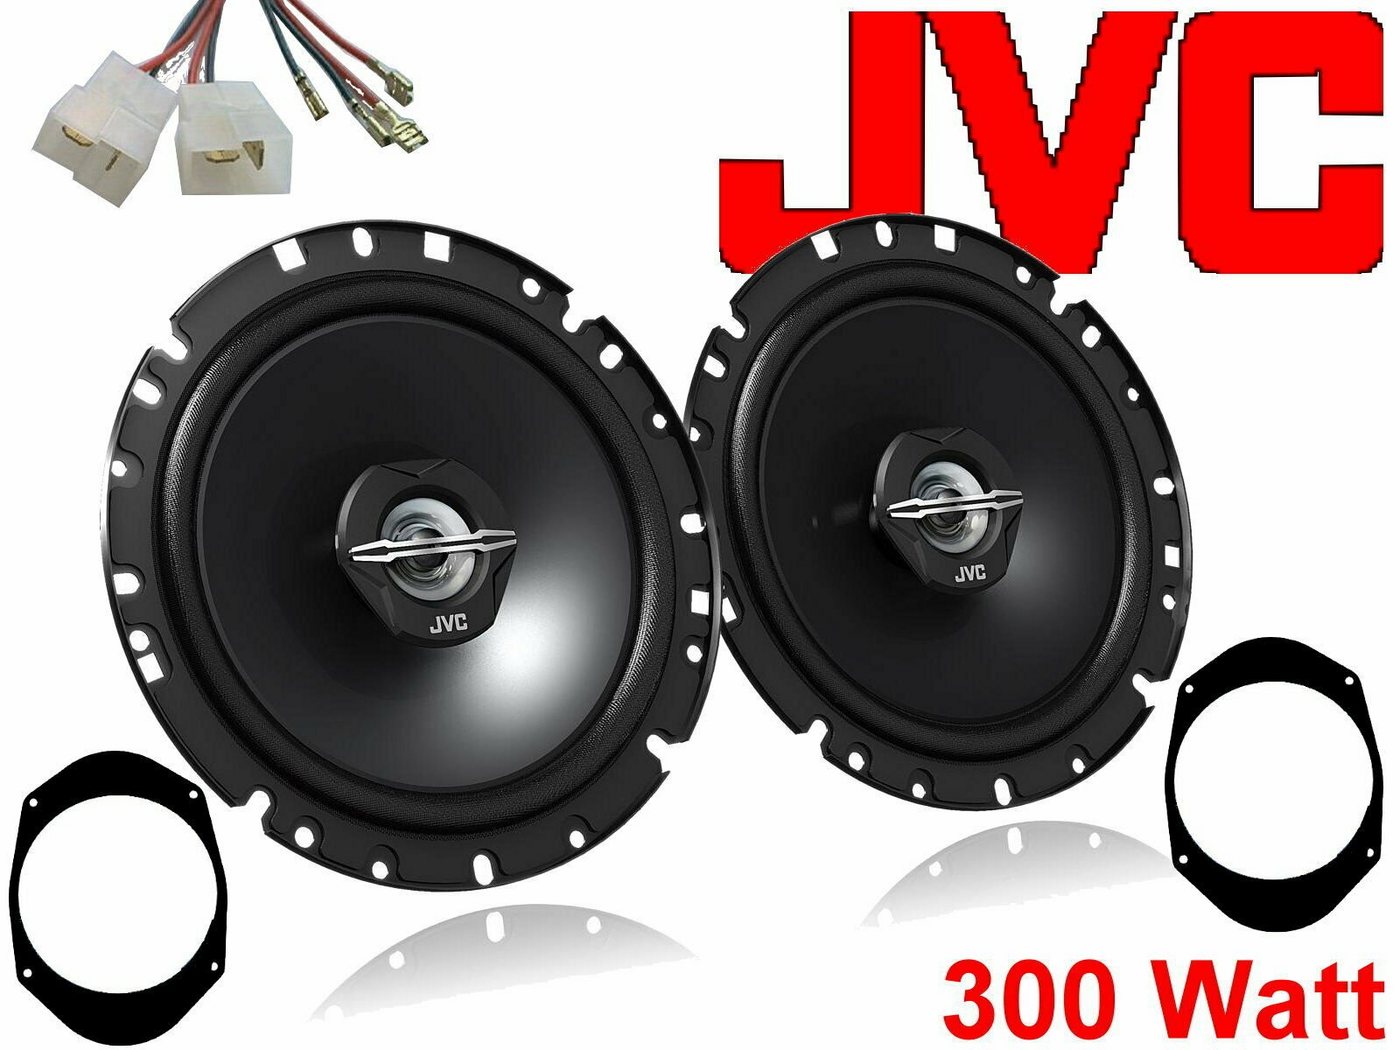 DSX JVC 300 W passend für Ford Mondeo 96 - 00 Lautspre Auto-Lautsprecher (30 W) von DSX